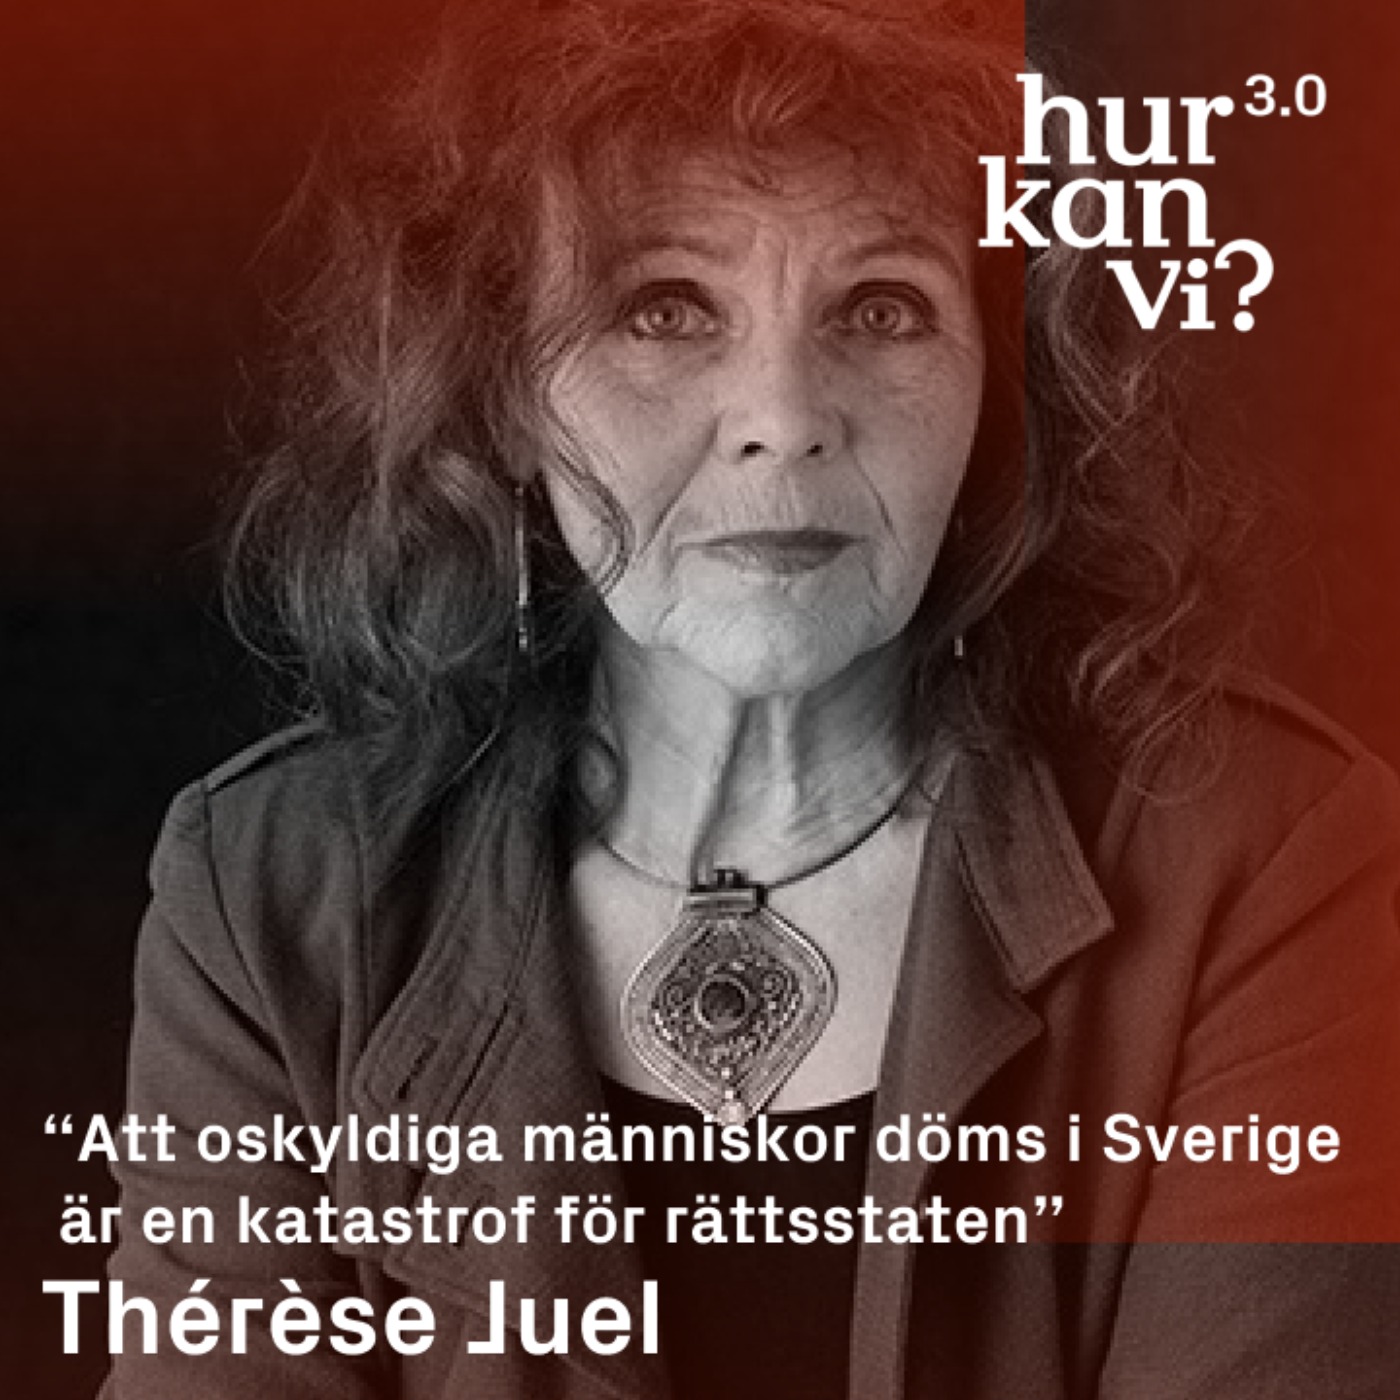 Thérèse Juel - “Att oskyldiga människor döms i Sverige är en katastrof för rättsstaten”